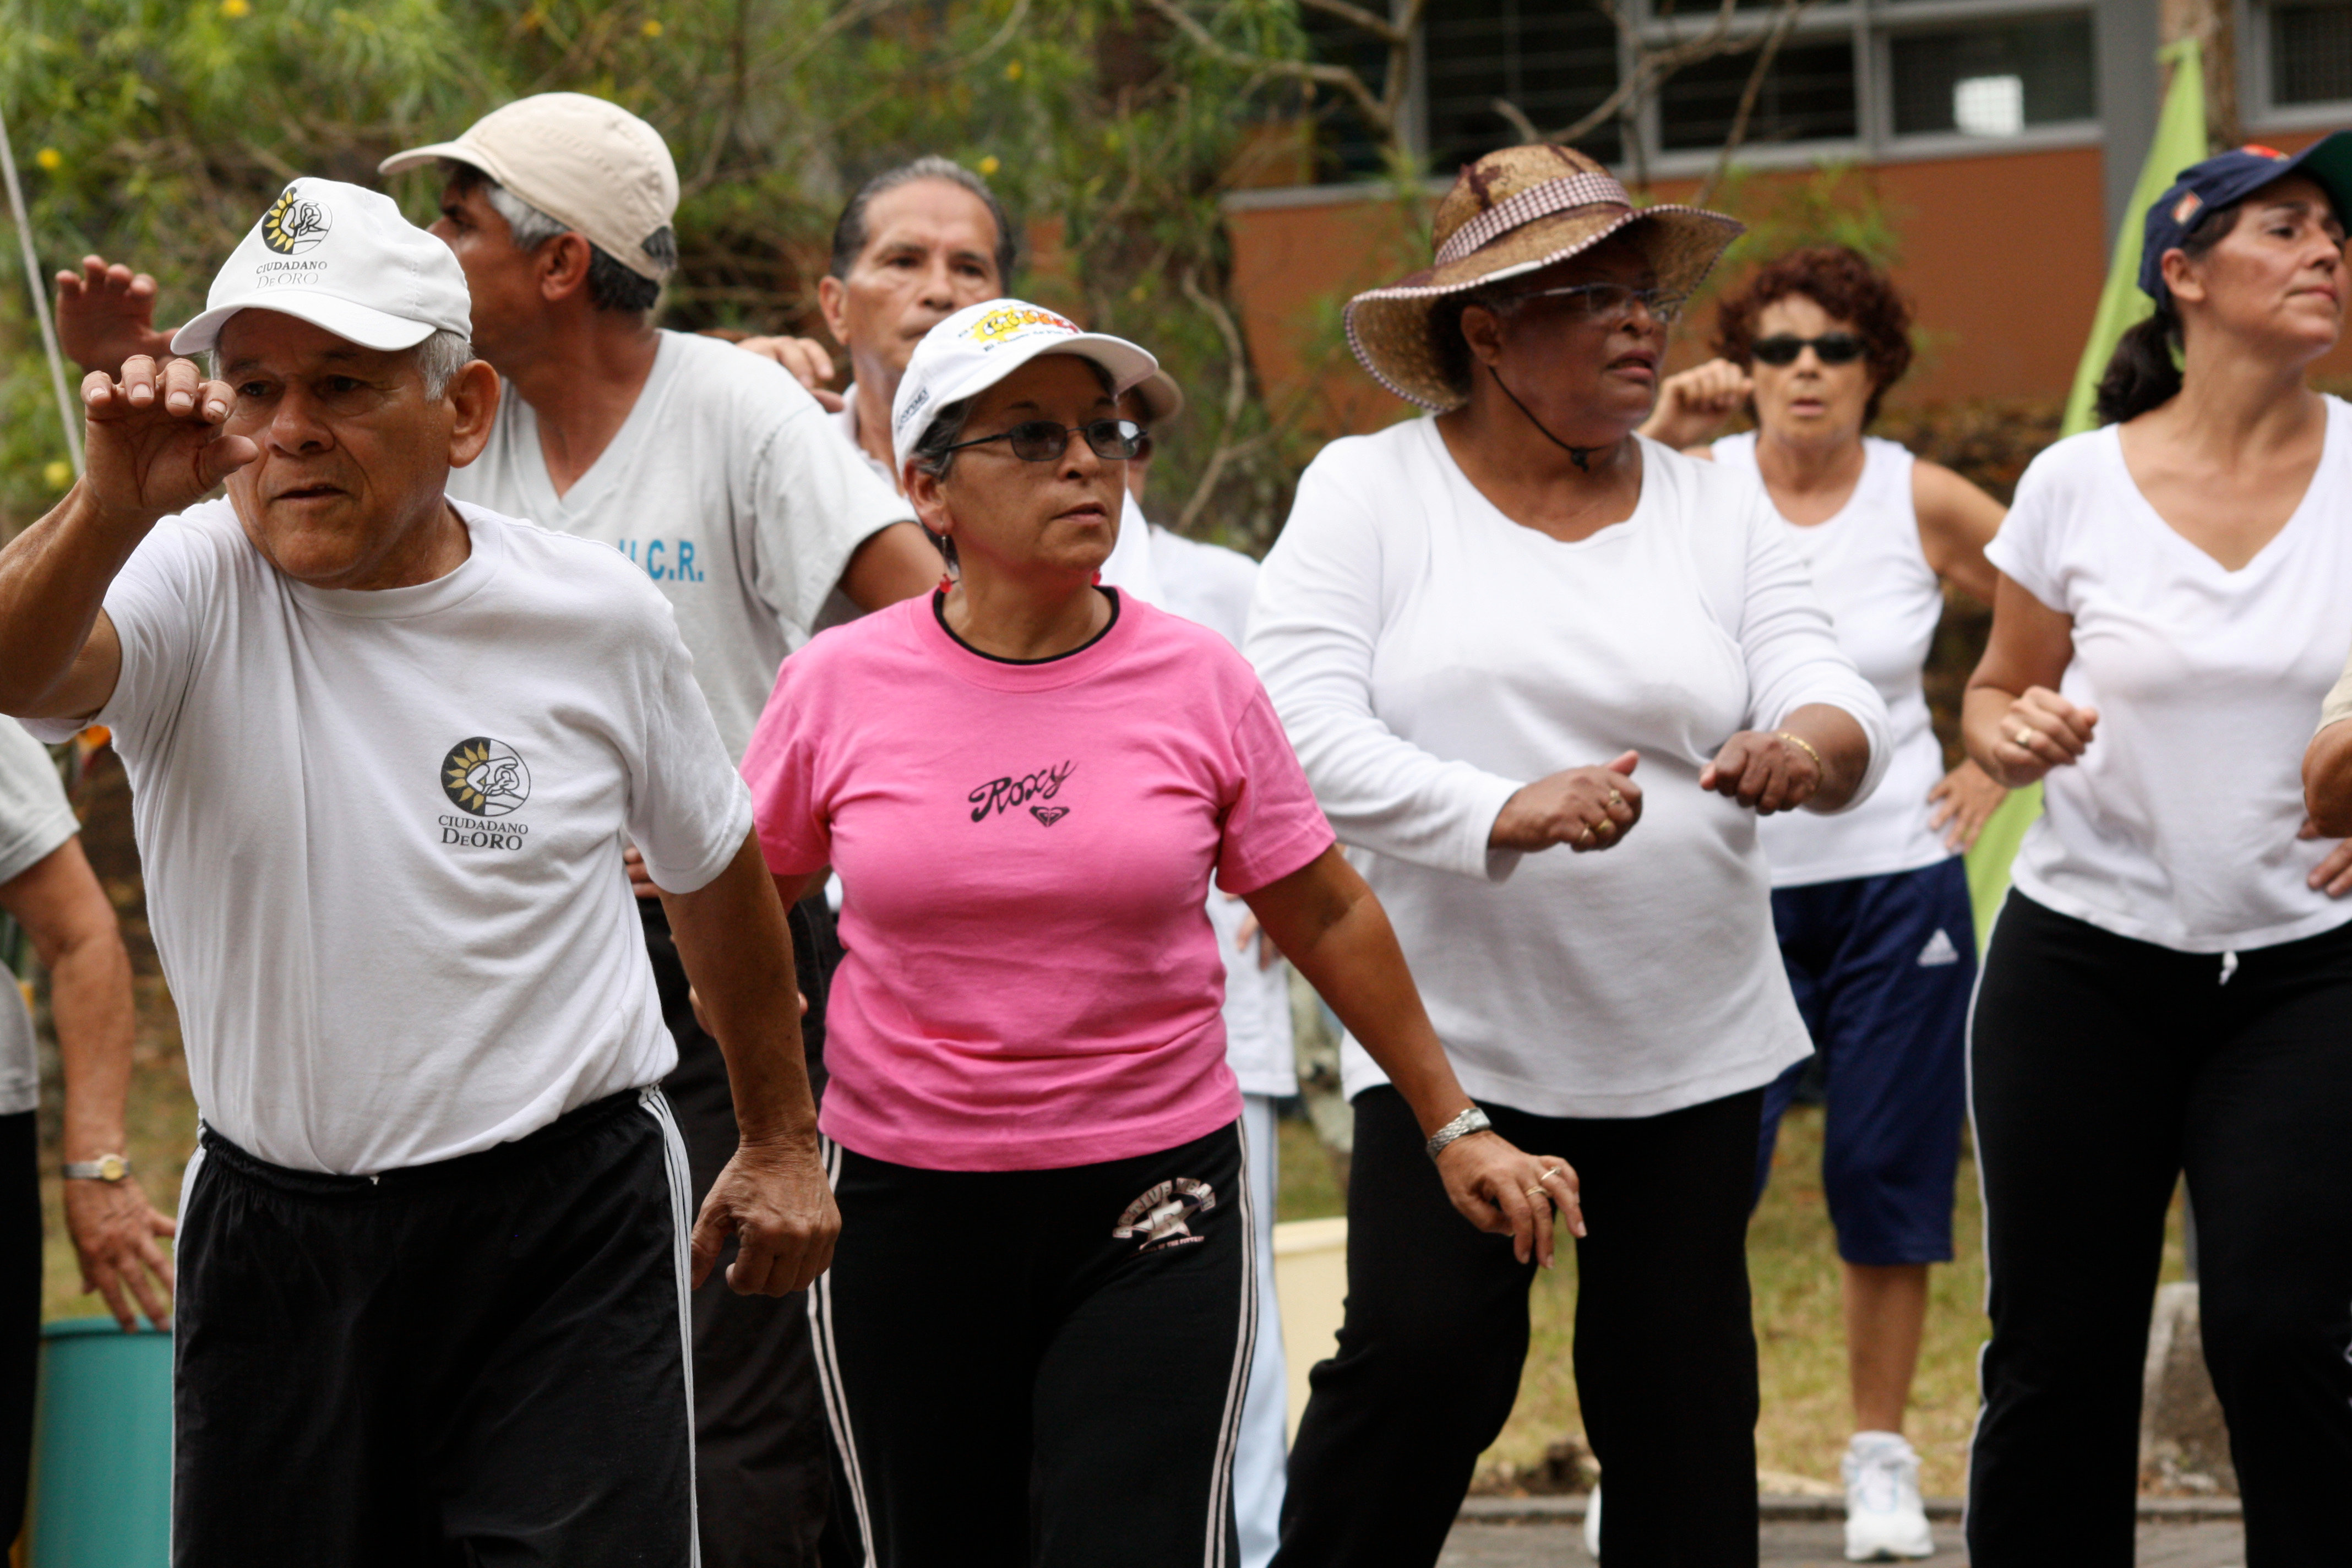 La realización de ejercicio físico de manera regular y controlada es importante en la persona adulta mayor. Fotografìa: ODI.